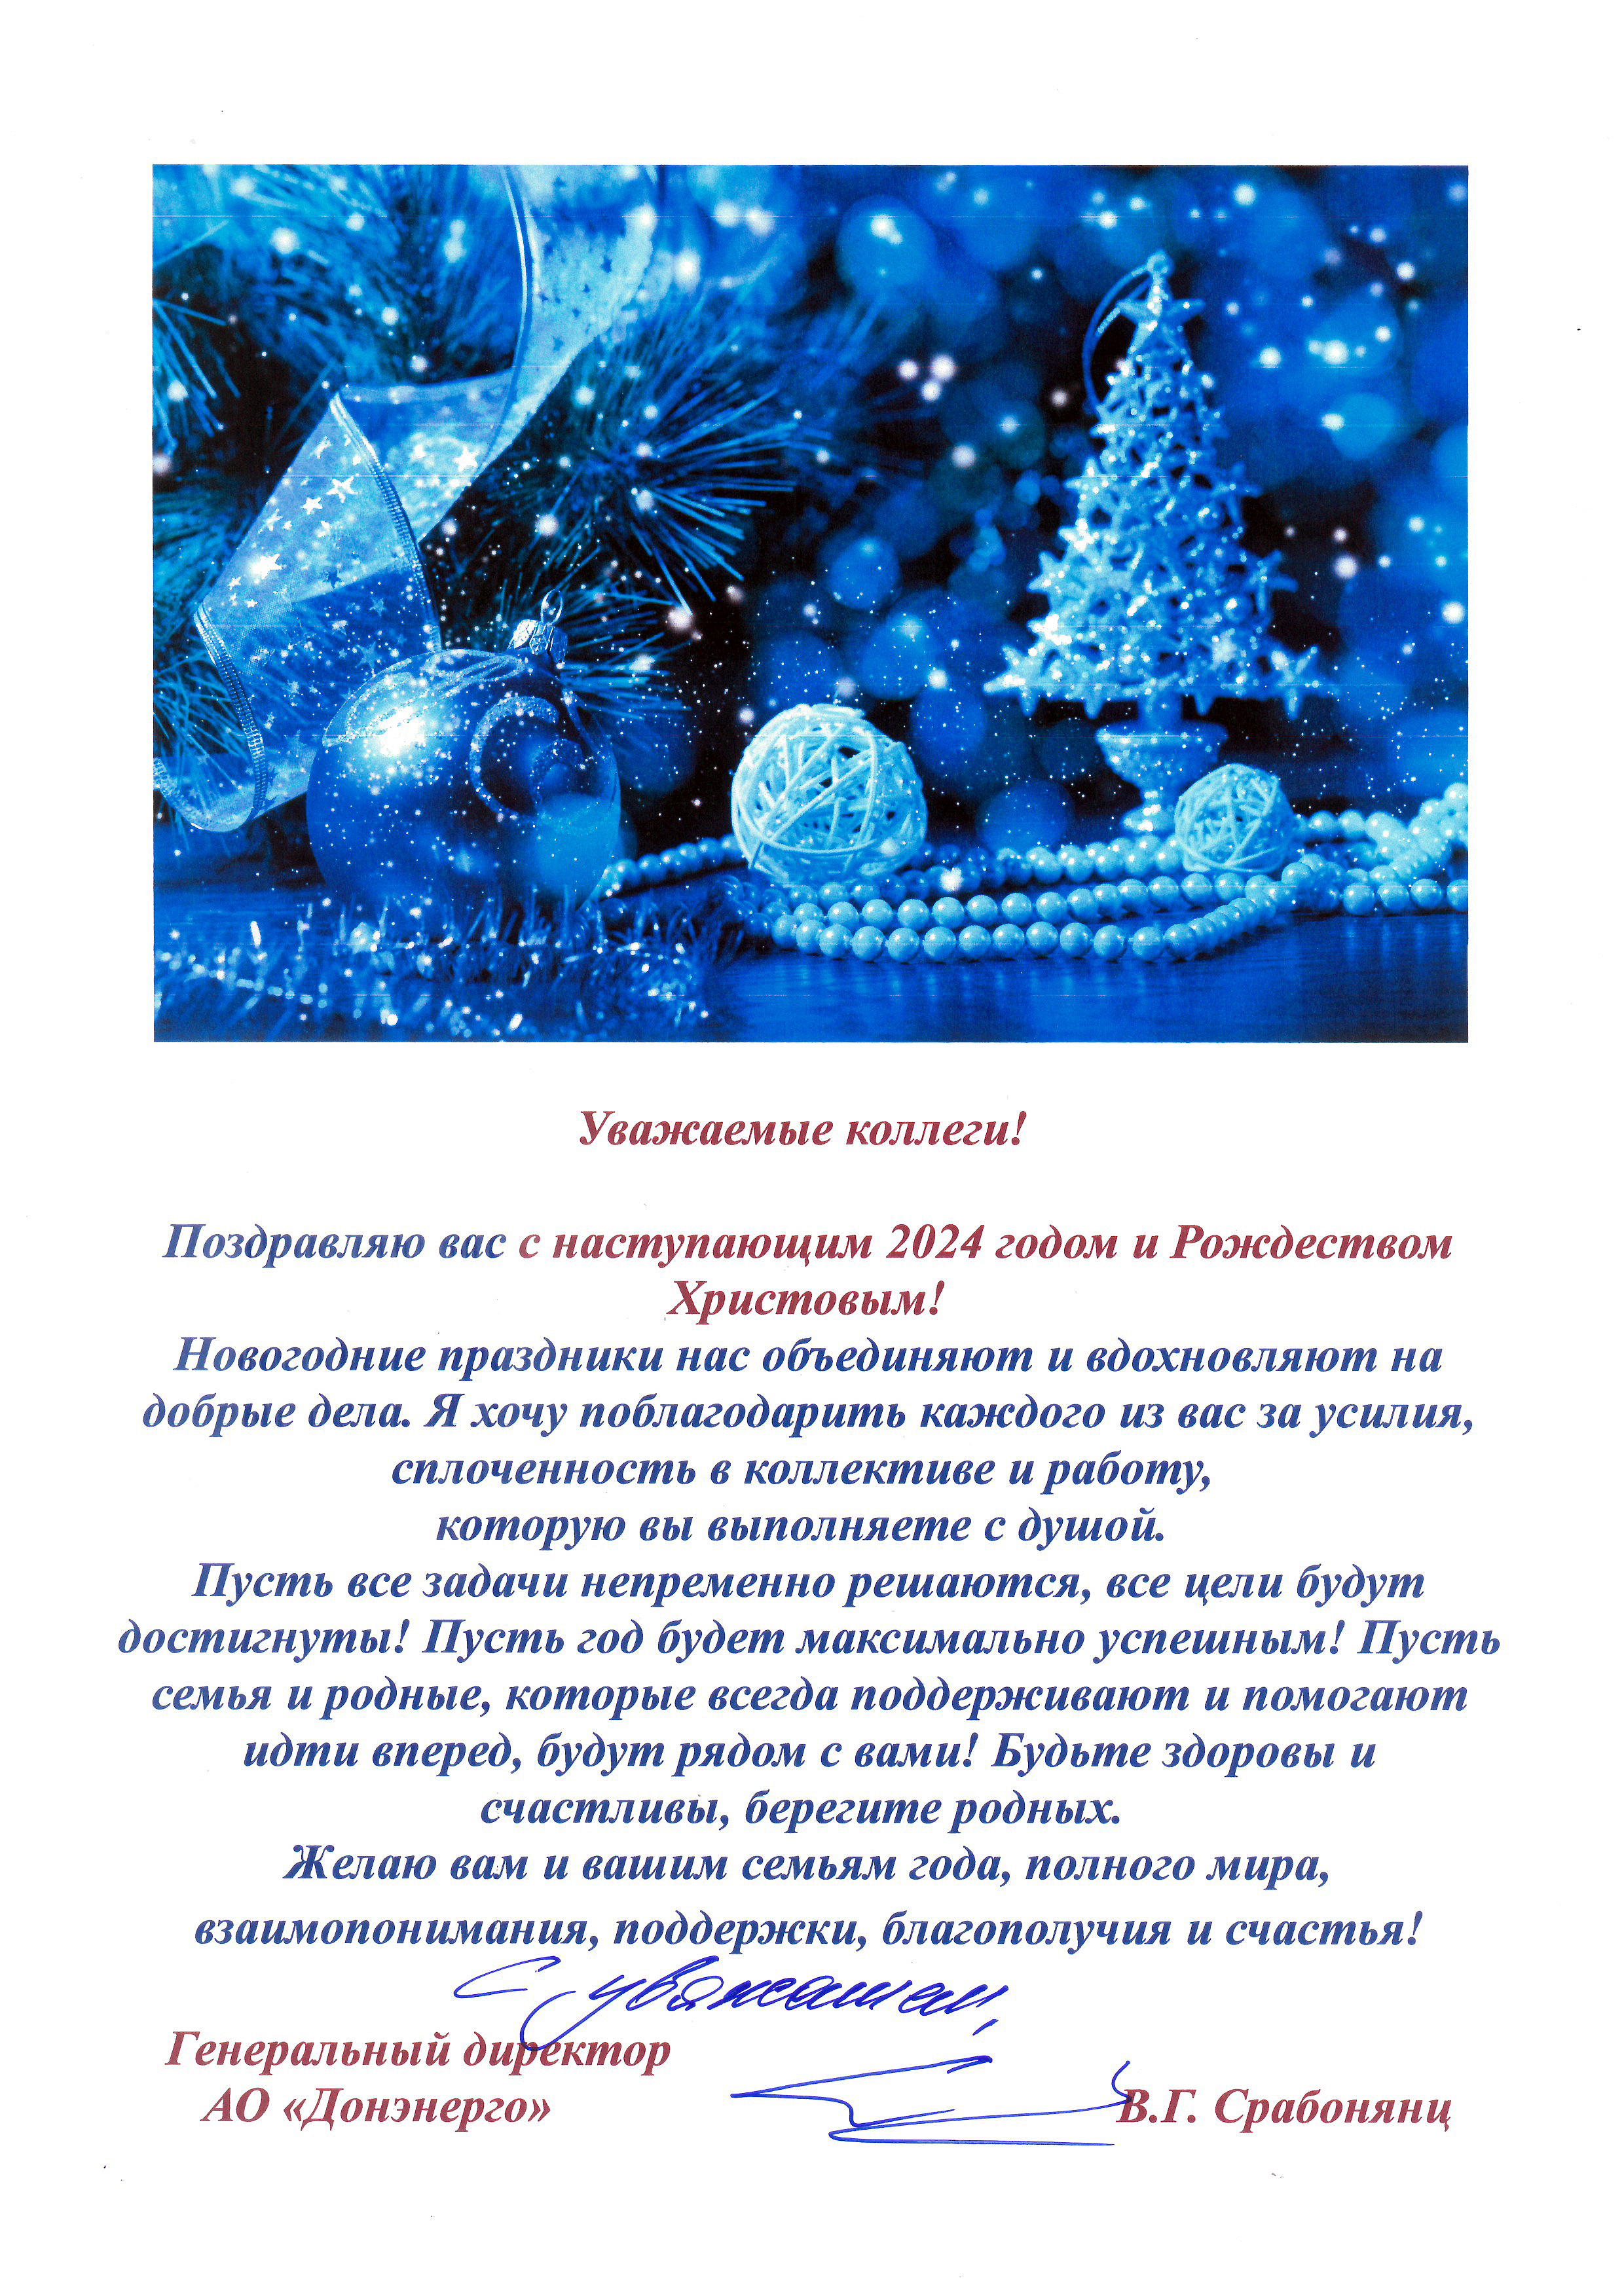 Поздравление генерального директора АО «Донэнерго» В.Г. Срабонянц с наступающим 2024 годом и Рождеством Христовым